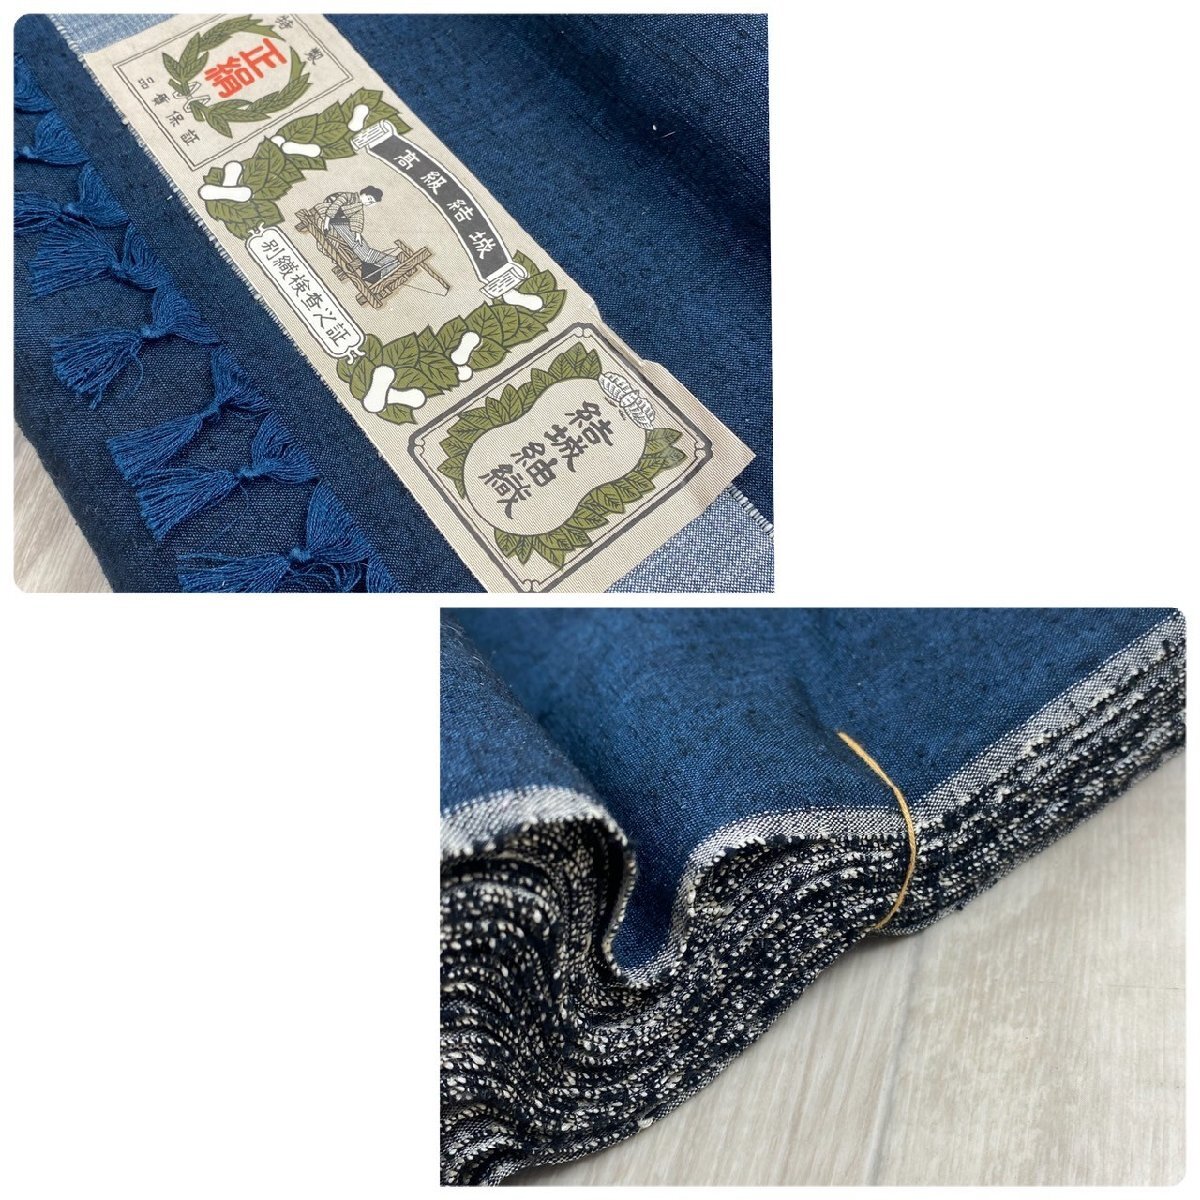  не использовался хранение товар шёлк из Юки тканый ткань темно-синий натуральный шелк высококлассный . замок F-KT 1403 качество отображать 336 одноцветный кимоно ткань ткань покрой .. земля гора дуть цвет подкладка лоскут 